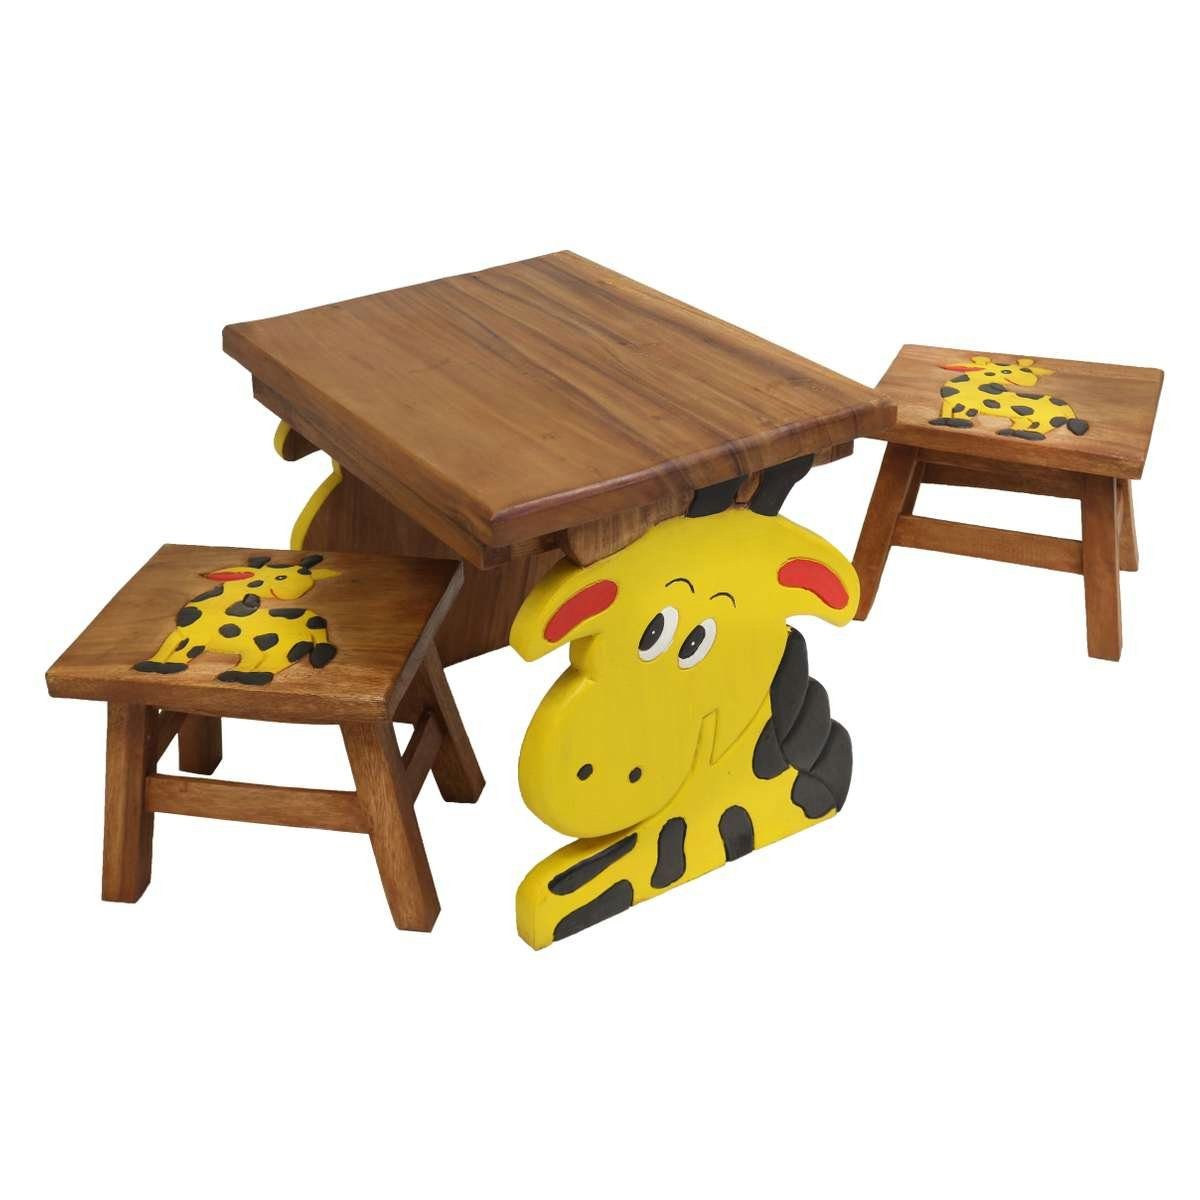 Oriental Galerie Kindersitzgruppe Kindermöbel Set Eckiger Kindertisch mit 2 Hockern Giraffe, traditionelle Herstellung in Handarbeit im Ursprungsland